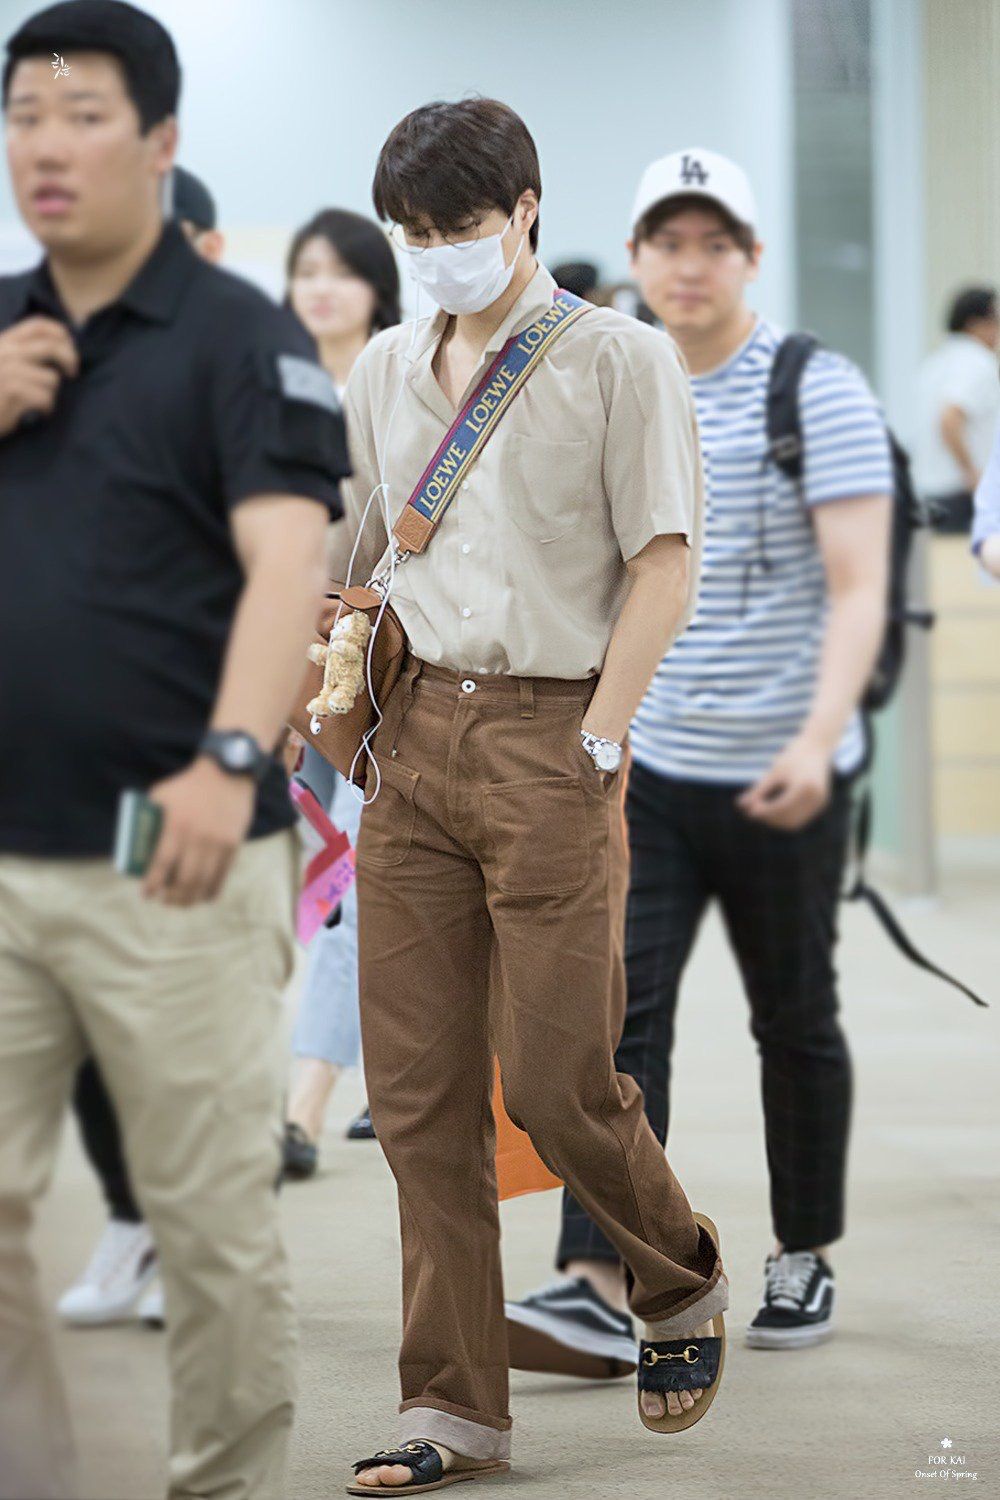 kai đeo túi hình gấu khi ra sân bay